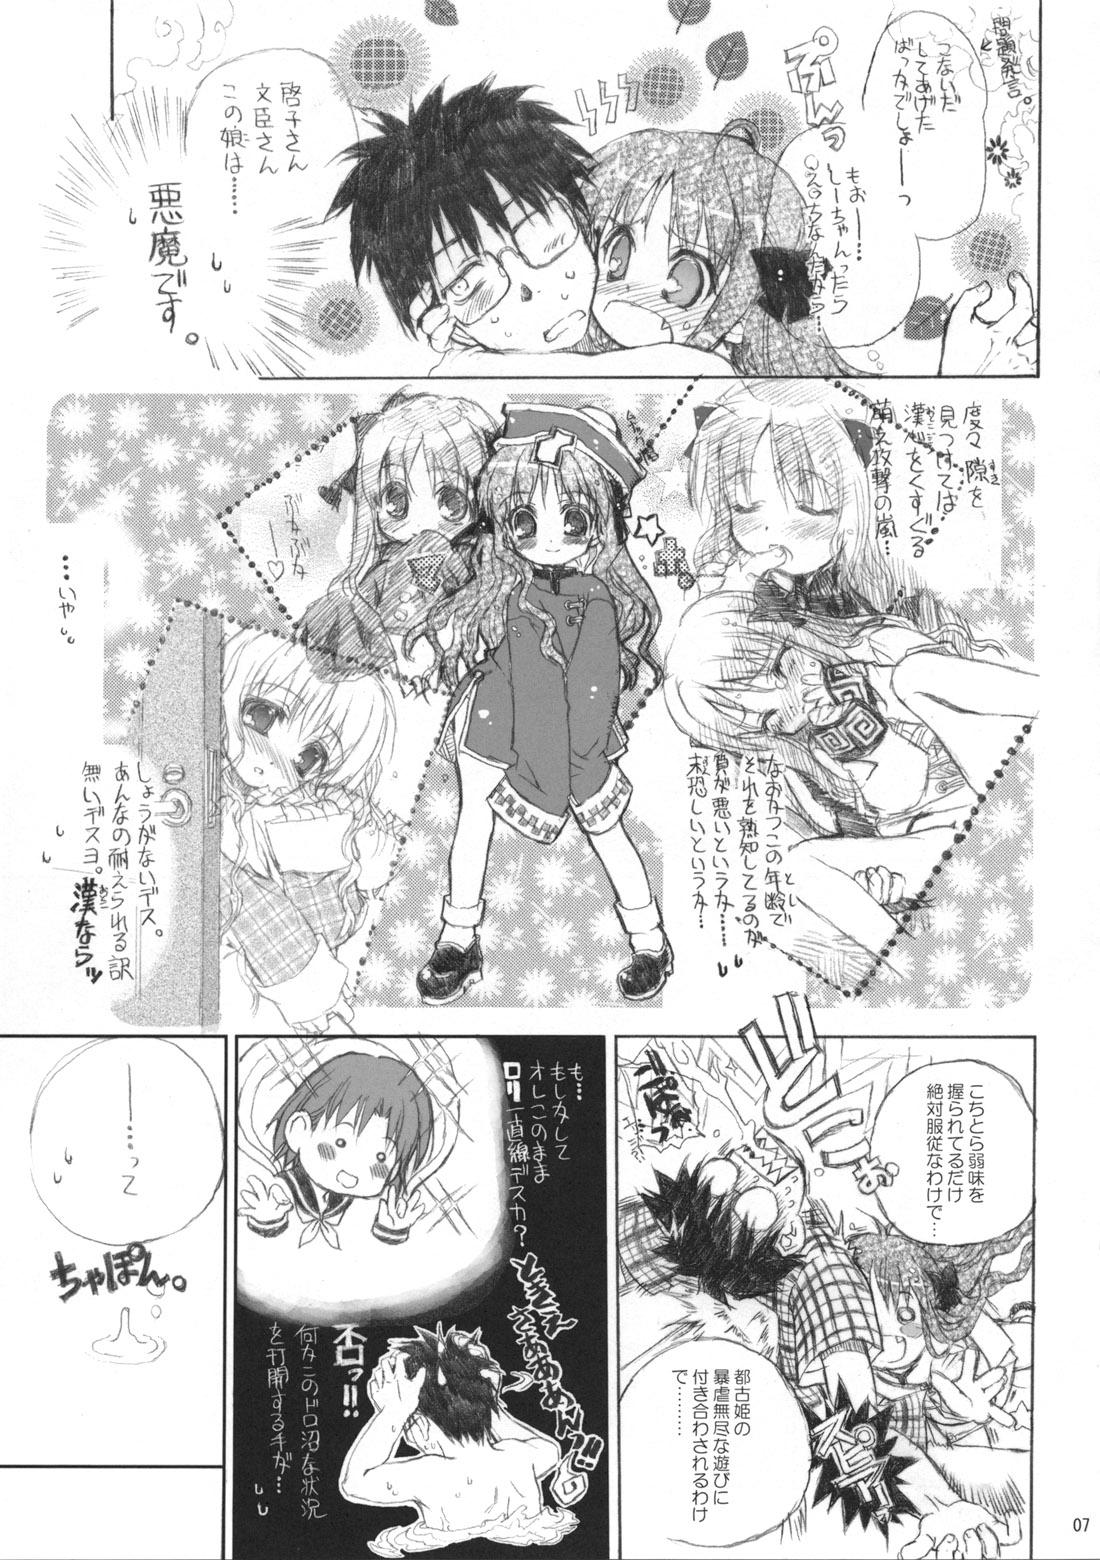 Bitch Neko-bus Tei no Hon vol.5 - Tsukihime Gay Broken - Page 7